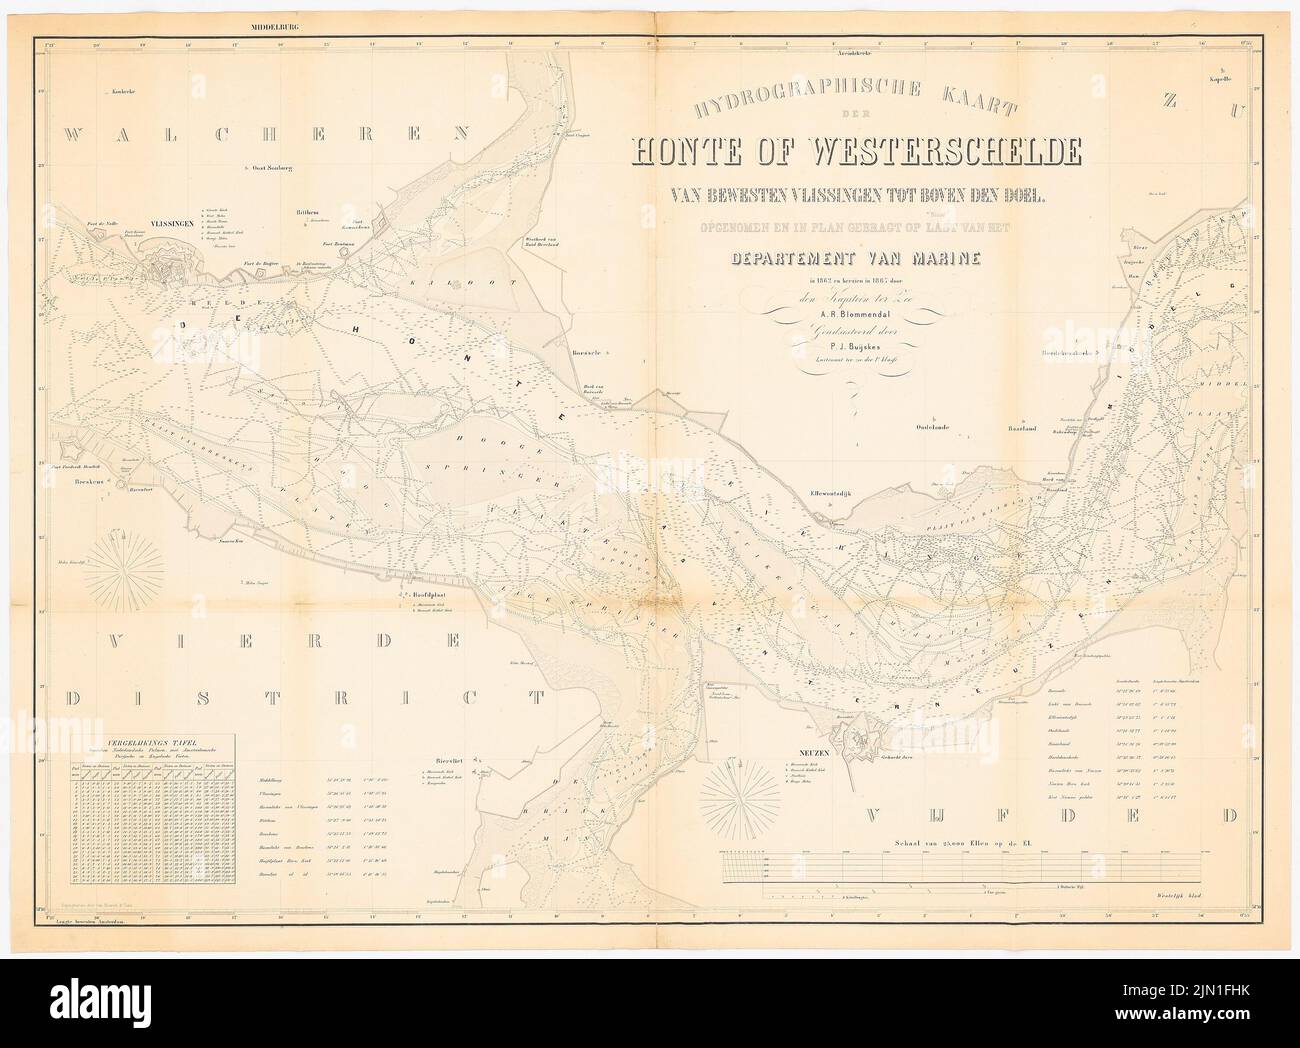 N.N., Hydrographische Karte von Zeeland (1867): Seekarte der Westerschelde Fairway, Maßstabsbalken. Druck auf Papier, 94,2 x 127,8 cm (einschließlich Scankanten) N.N. : Hydrografische Karte von Zeeland Stockfoto